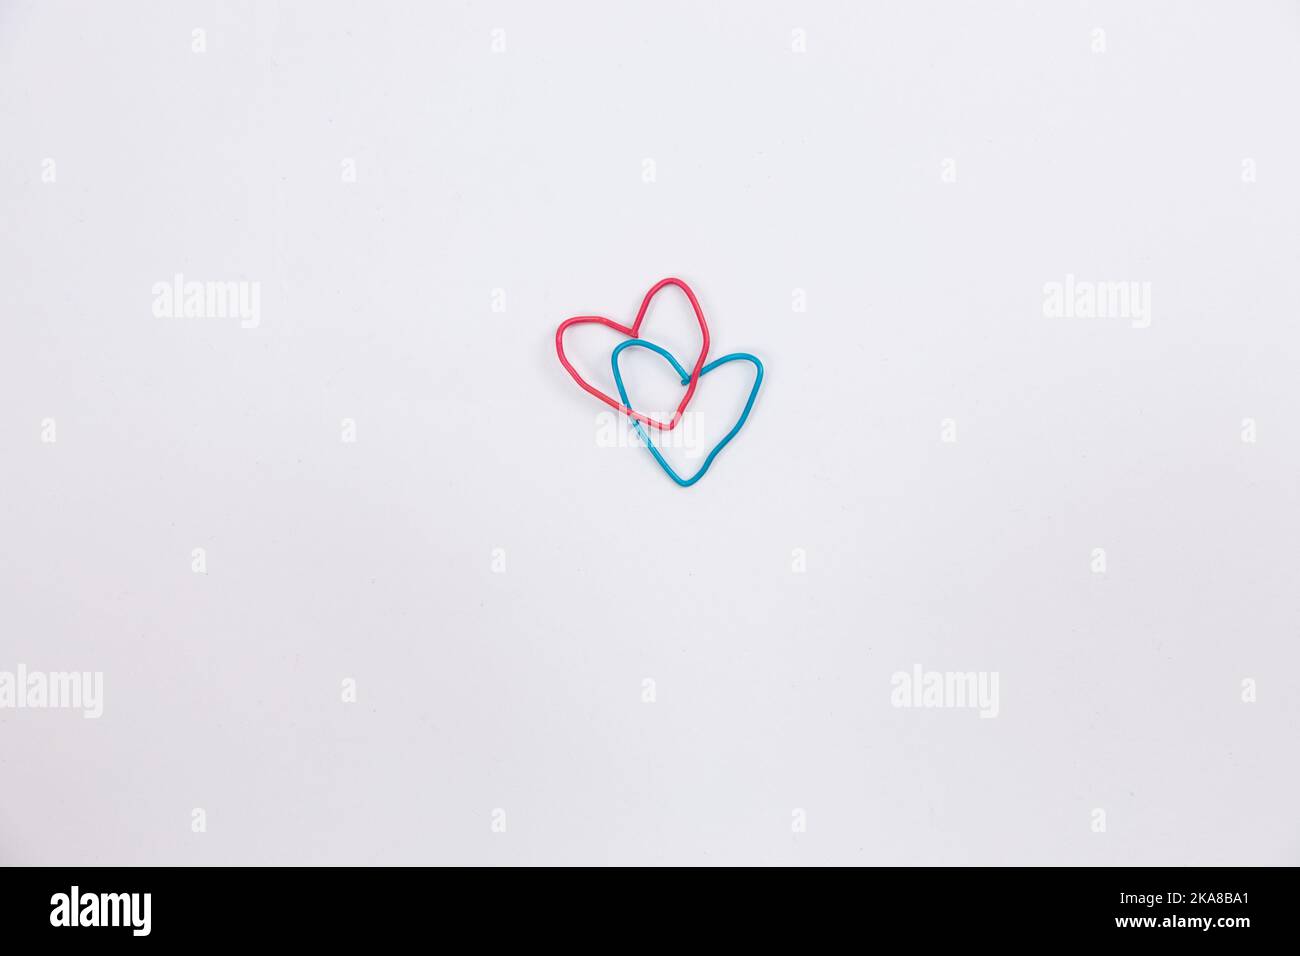 Una graffetta blu e rossa a forma di cuore su sfondo bianco isolato. Foto di alta qualità Foto Stock